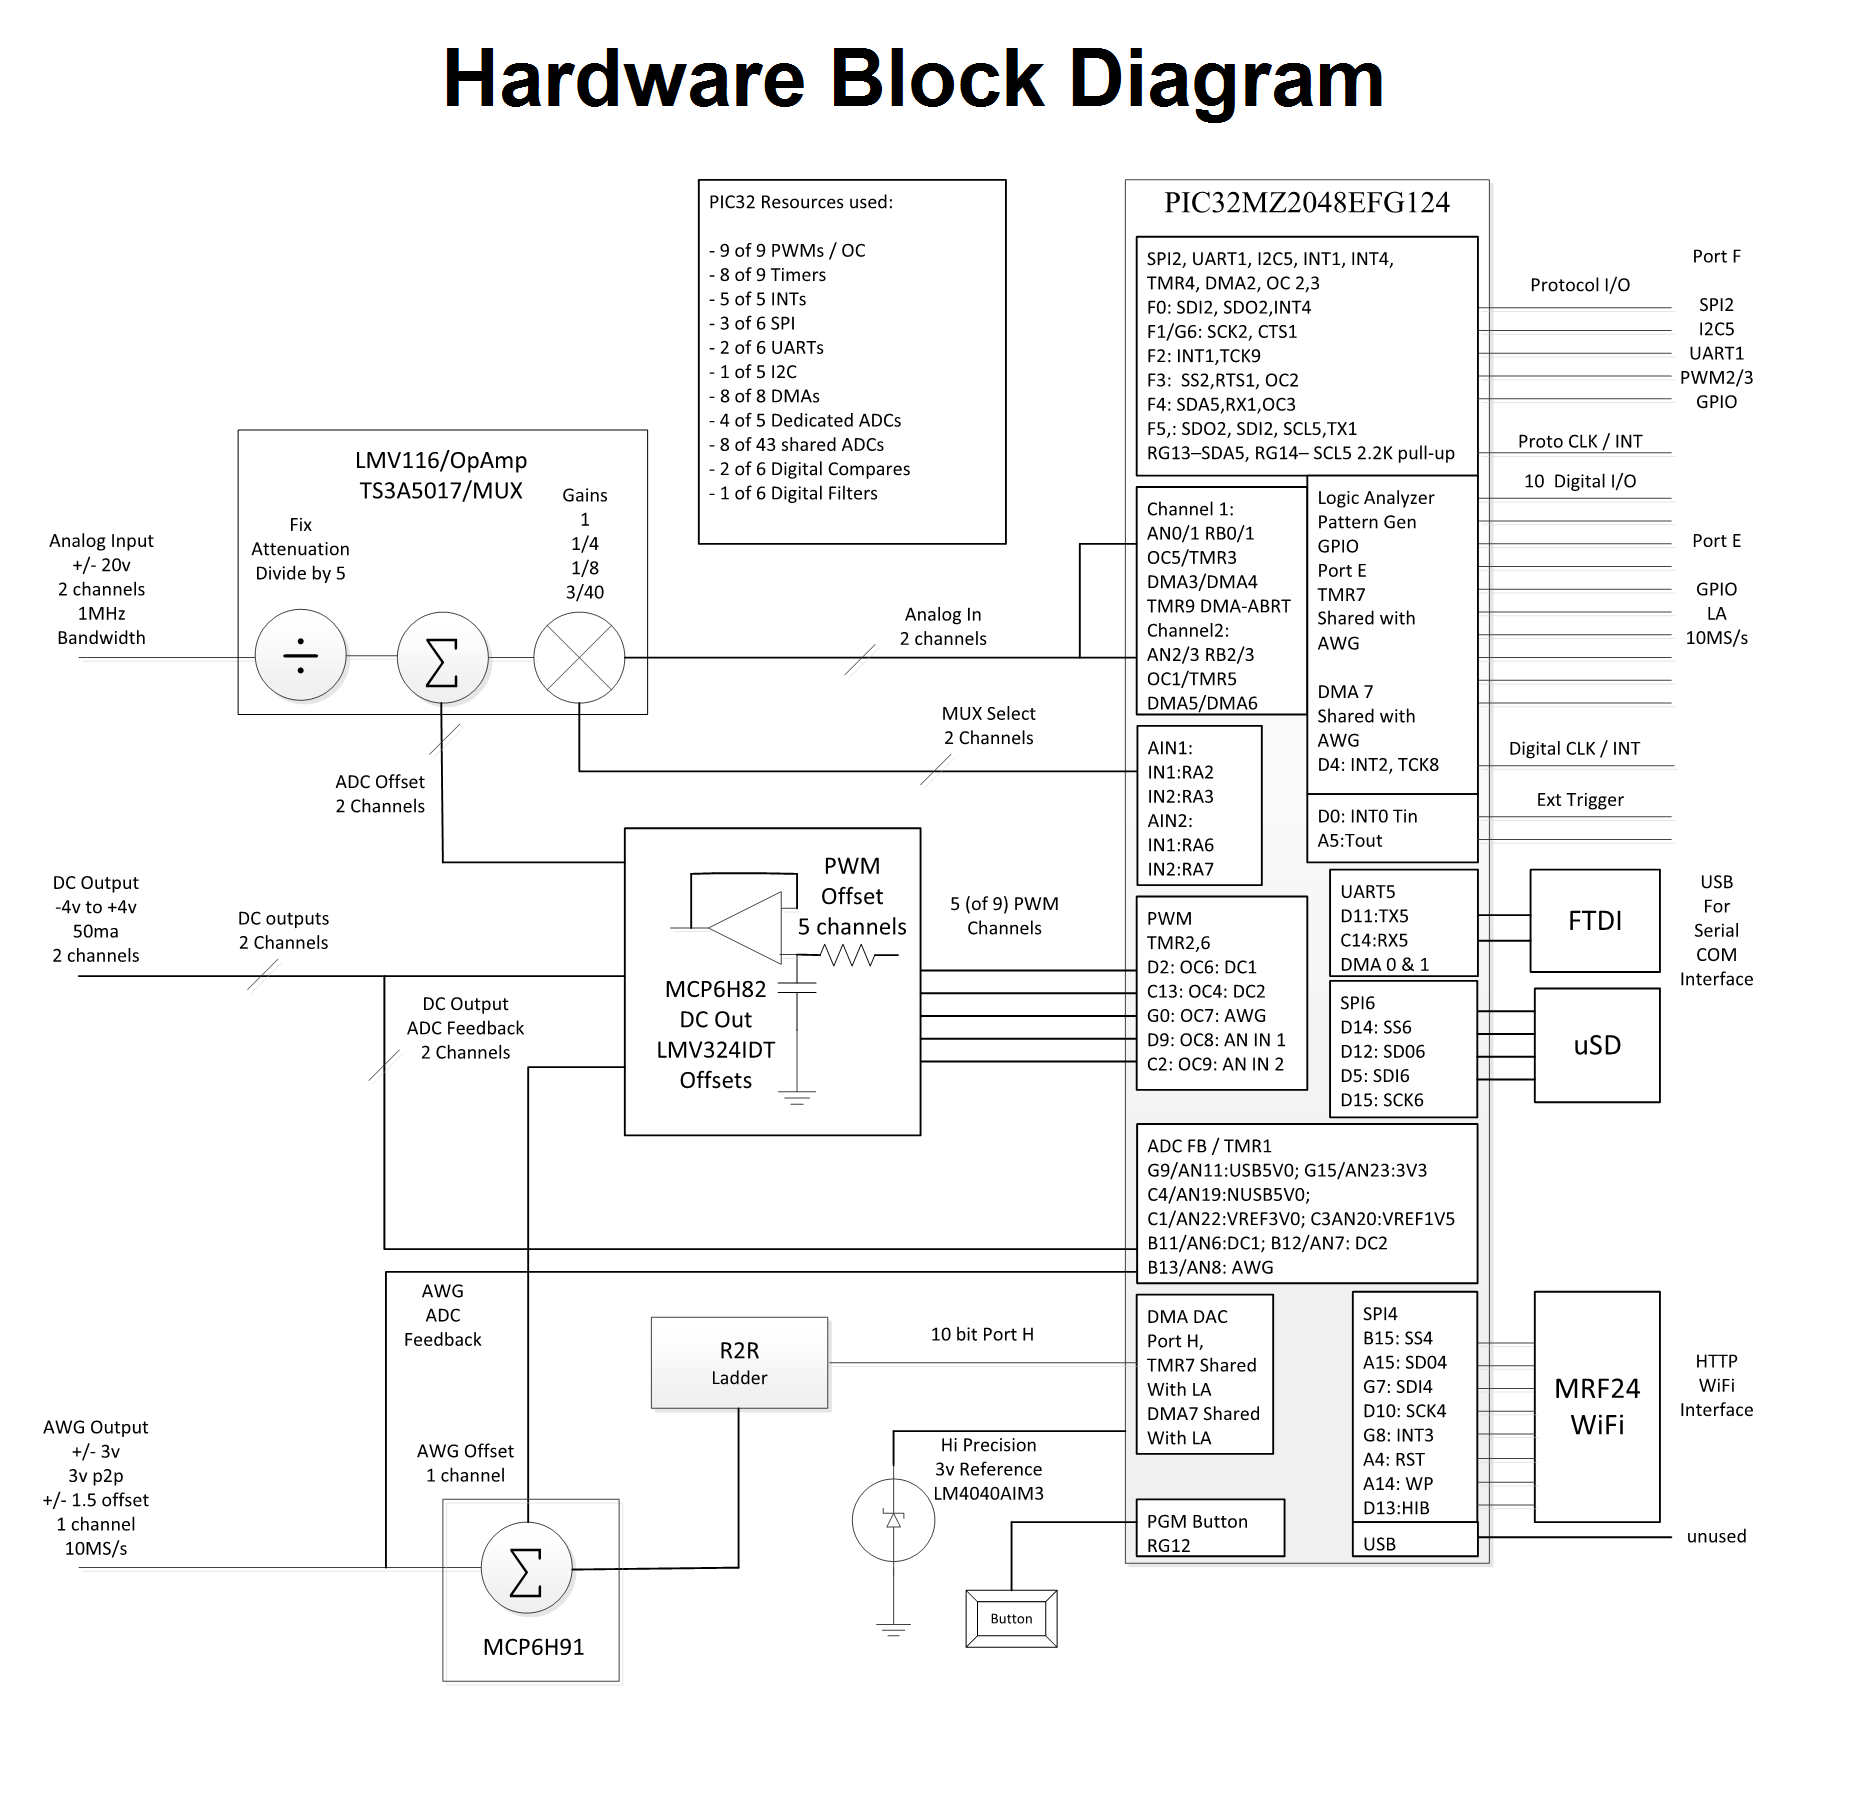 openscope_mz_hardware_block_diagram.png